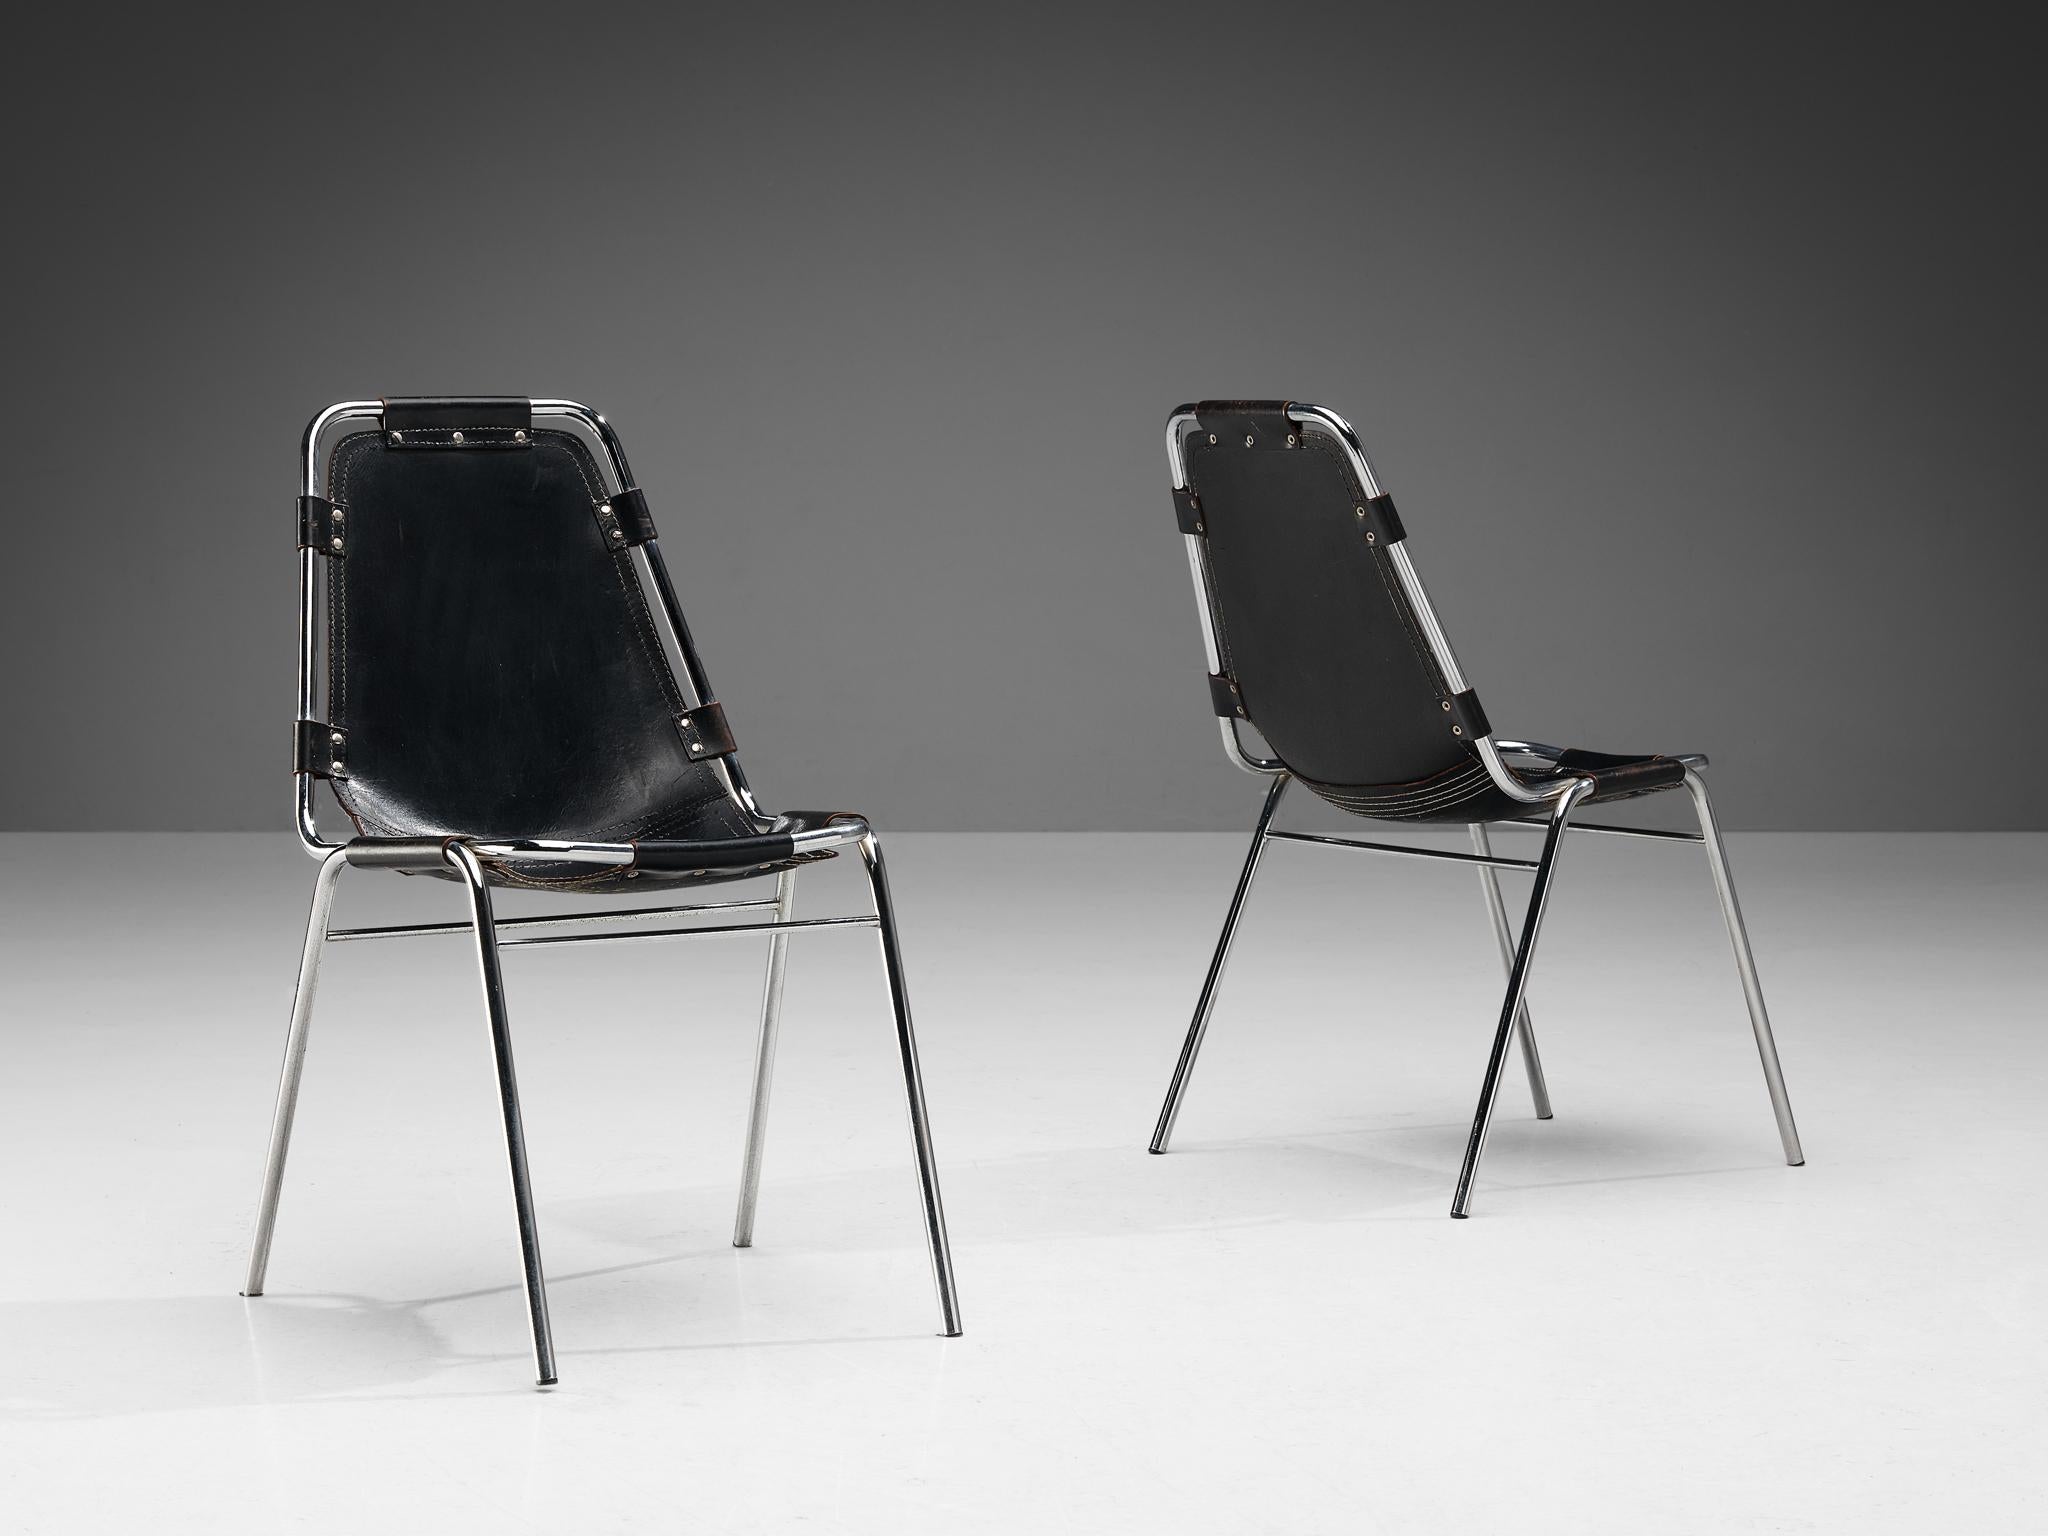 Dal Vera Paar 'Les Arcs' Stühle, ausgewählt von Charlotte Perriand, Paar Esszimmerstühle Modell 'Les Arcs', schwarzes Leder, verchromtes Metall, um 1970 

Dieses gut konstruierte Stuhlpaar wurde von Dal Vera hergestellt und von Charlotte Perriand